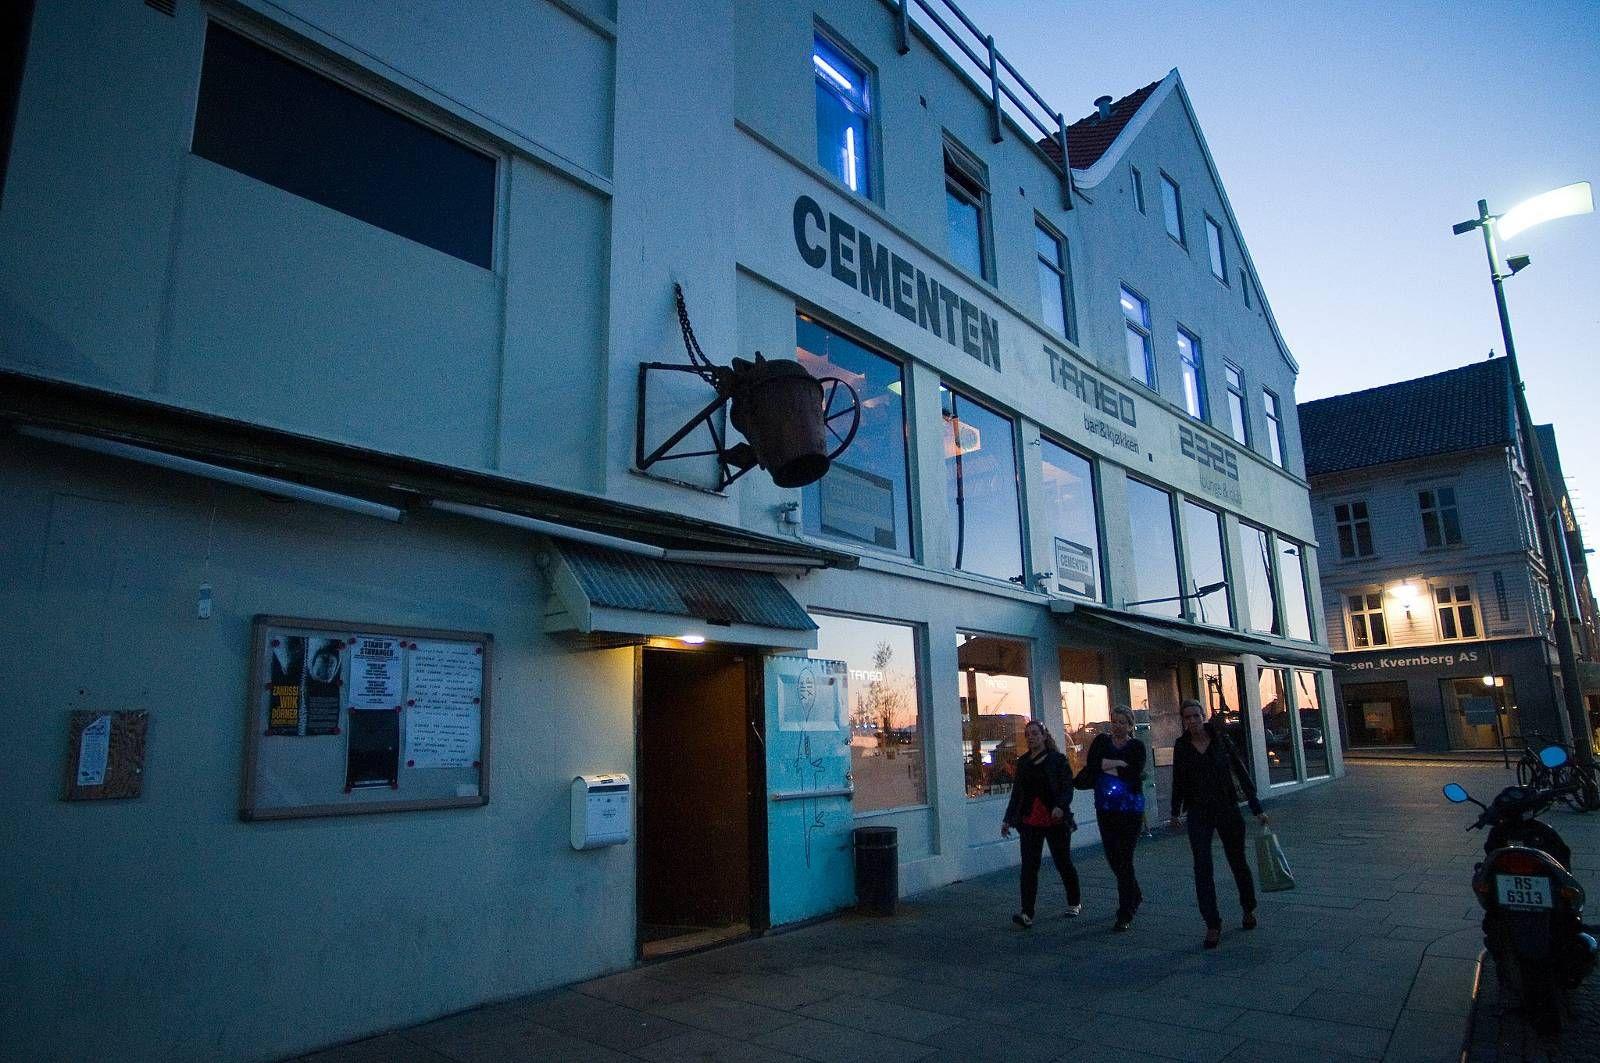 Tirsdag kveld åpner Cementen. Nattklubben blir den første i byen som holder åpent helt til klokka 03.00 siden landets uteliv ble pålagt å stenge 12. mars.  